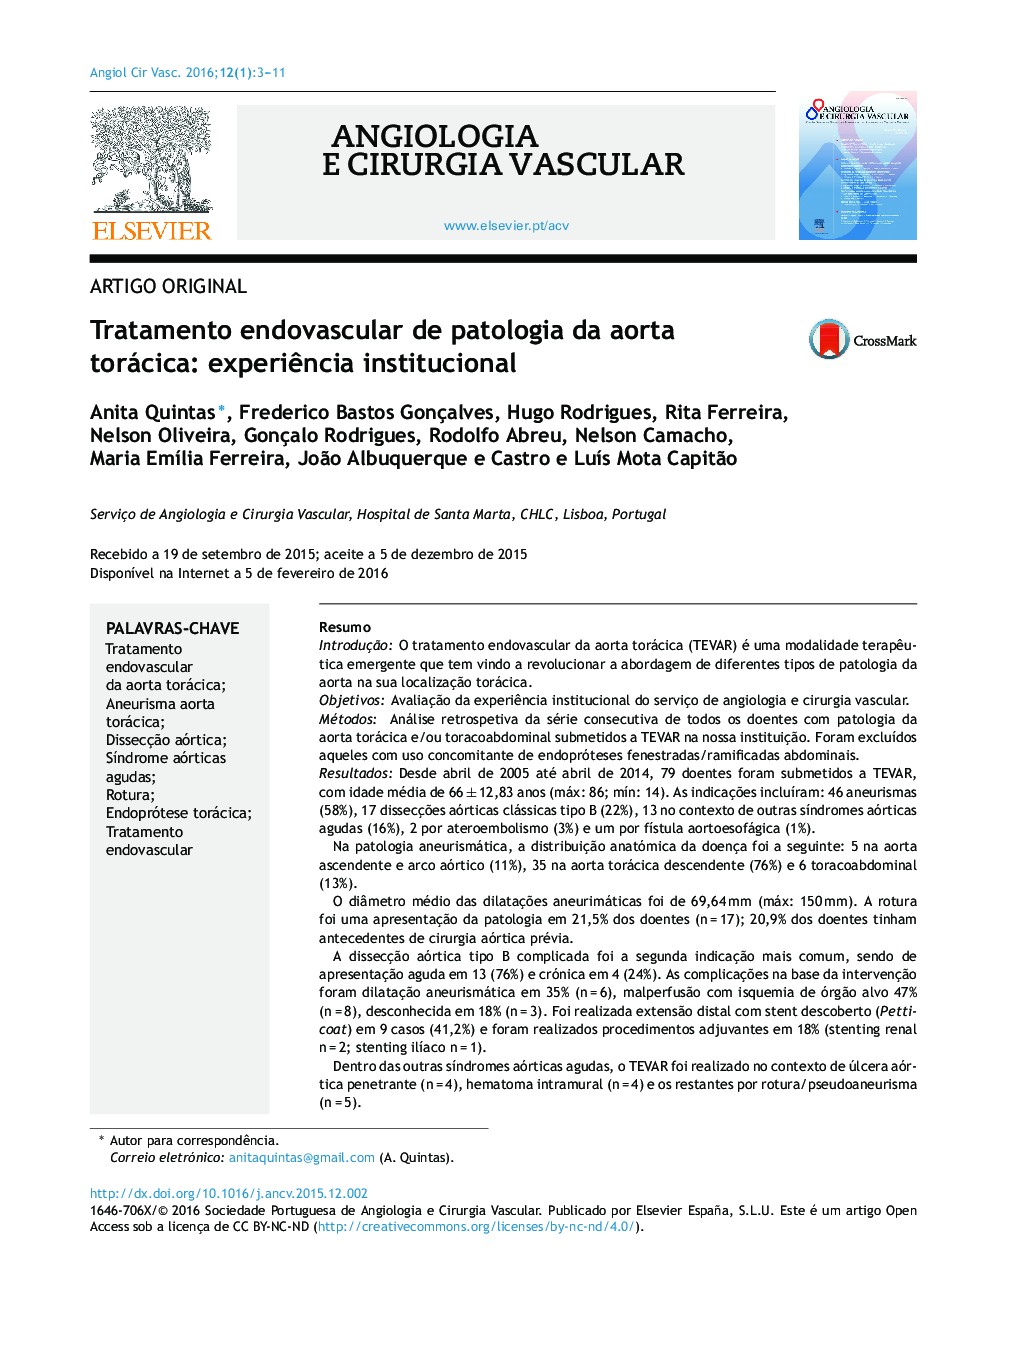 Tratamento endovascular de patologia da aorta torácica: experiência institucional